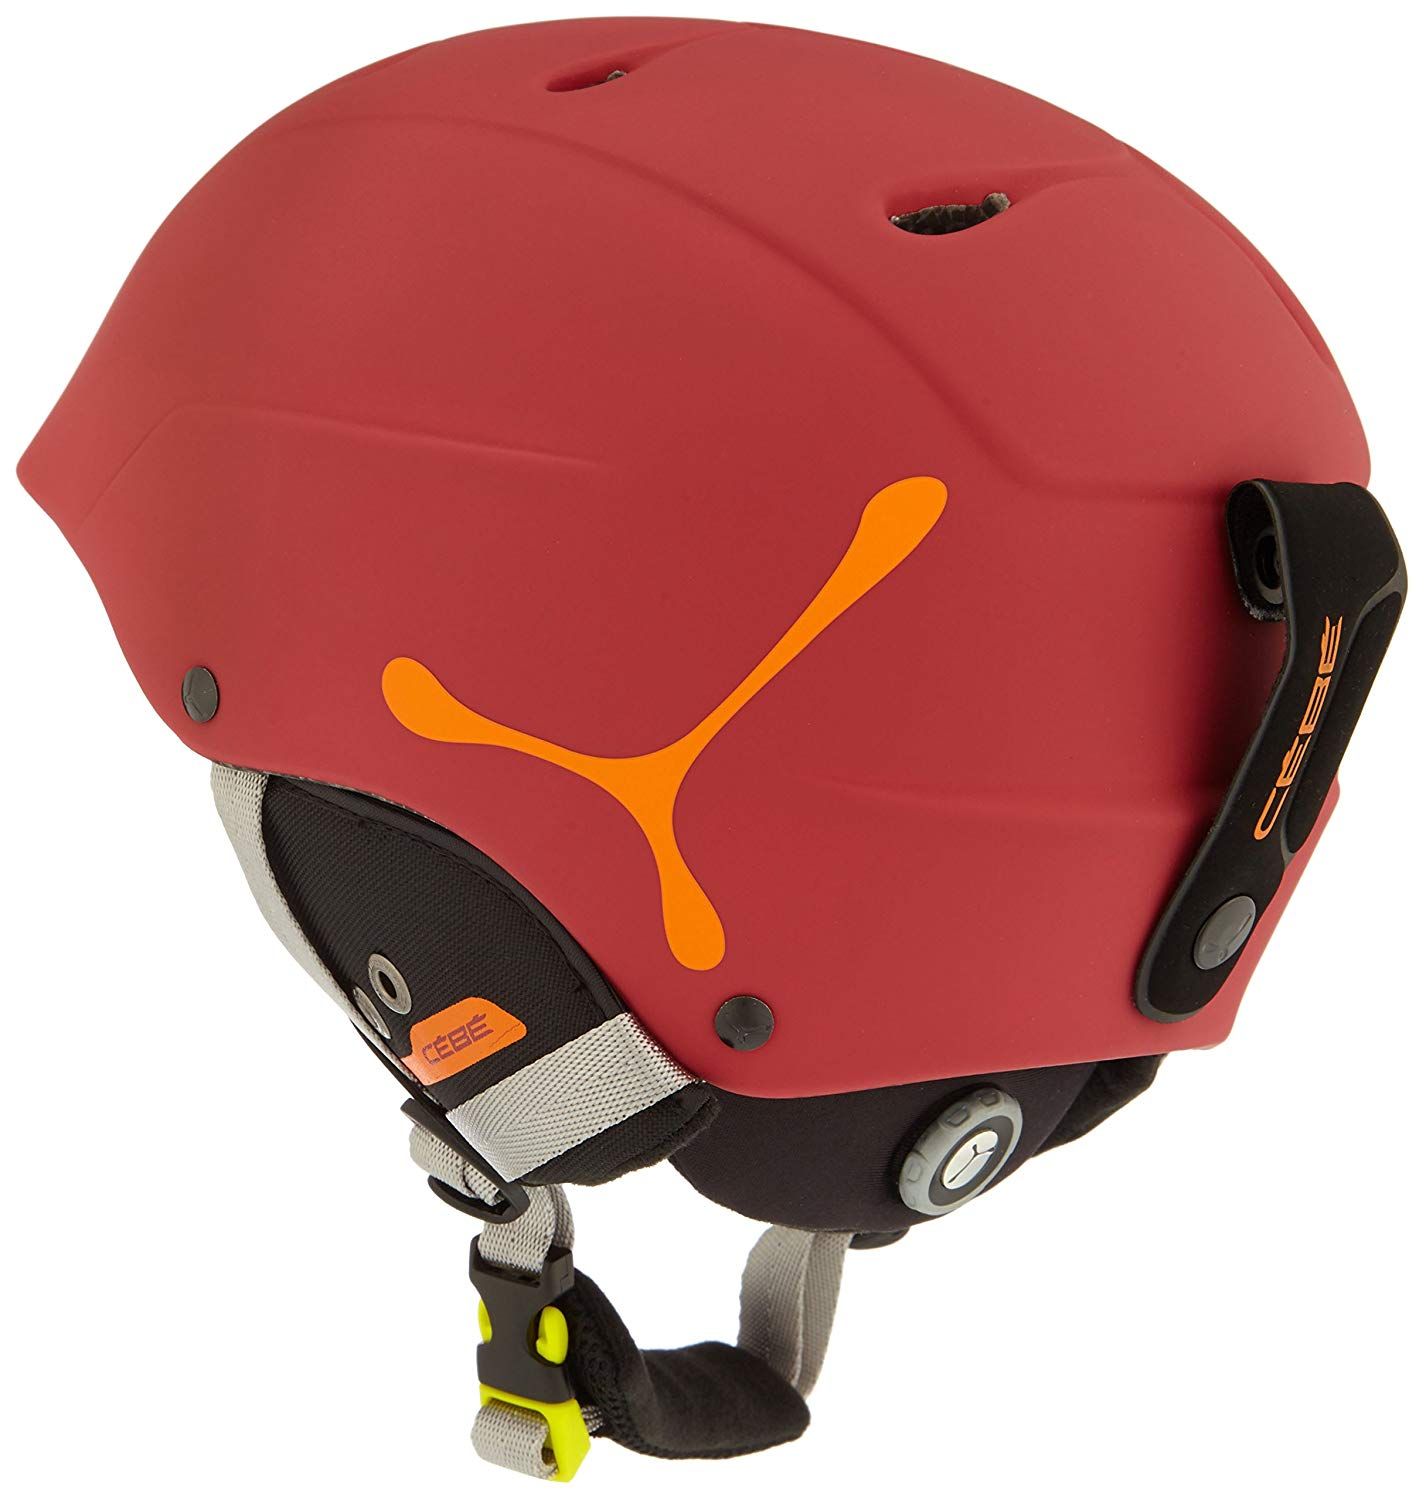 Cebe Contest Visor Rosu Orange Casca Ski  Marime XL-XXL  62-64 cm